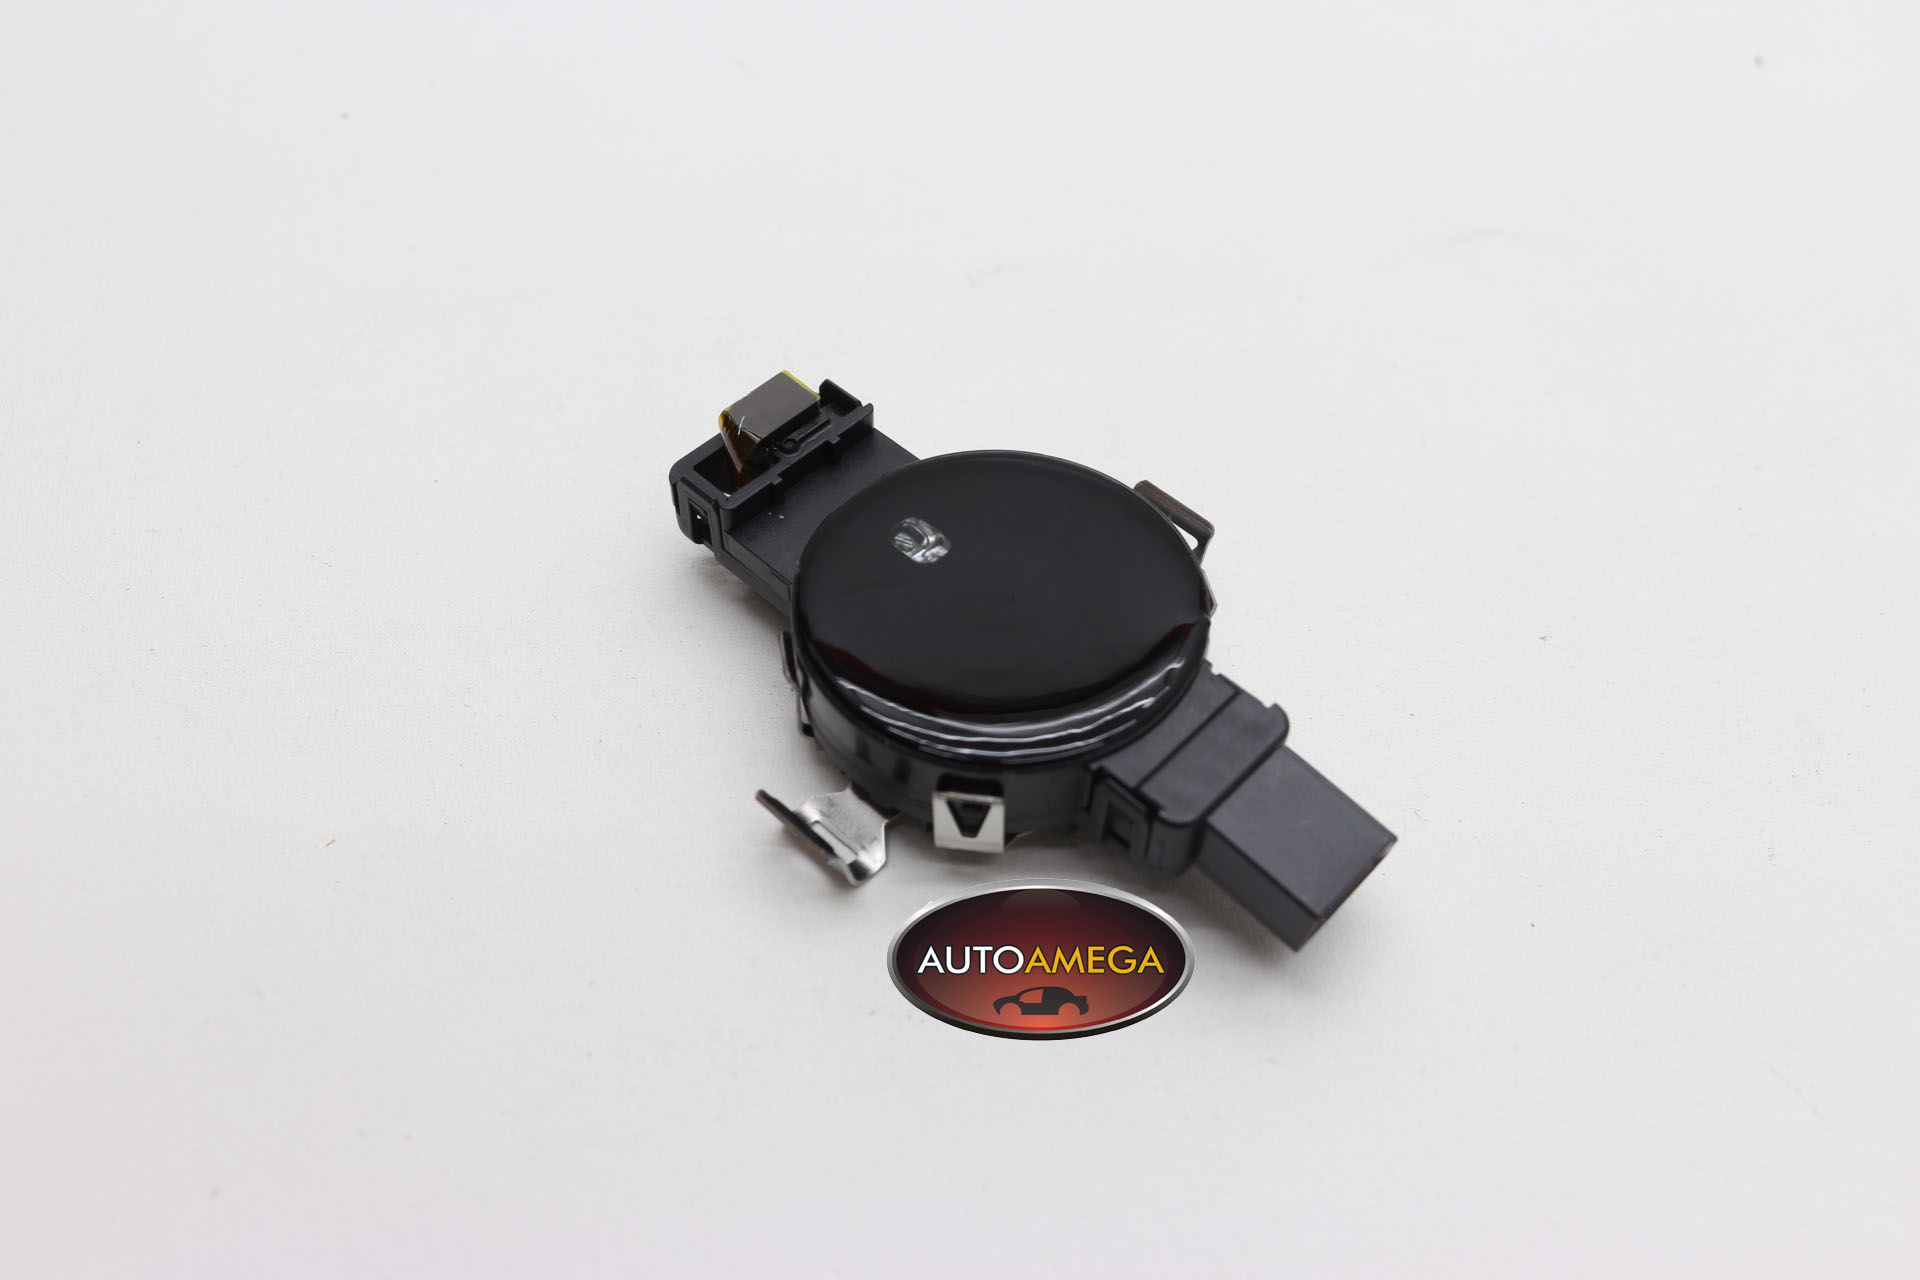 Sensor Chuva Crepuscular Umidade  Audi A3 A6 A7 A8 Q7 TT RS3 RS6 R8 81A955547A Frete Gratis Sul e Sudeste.